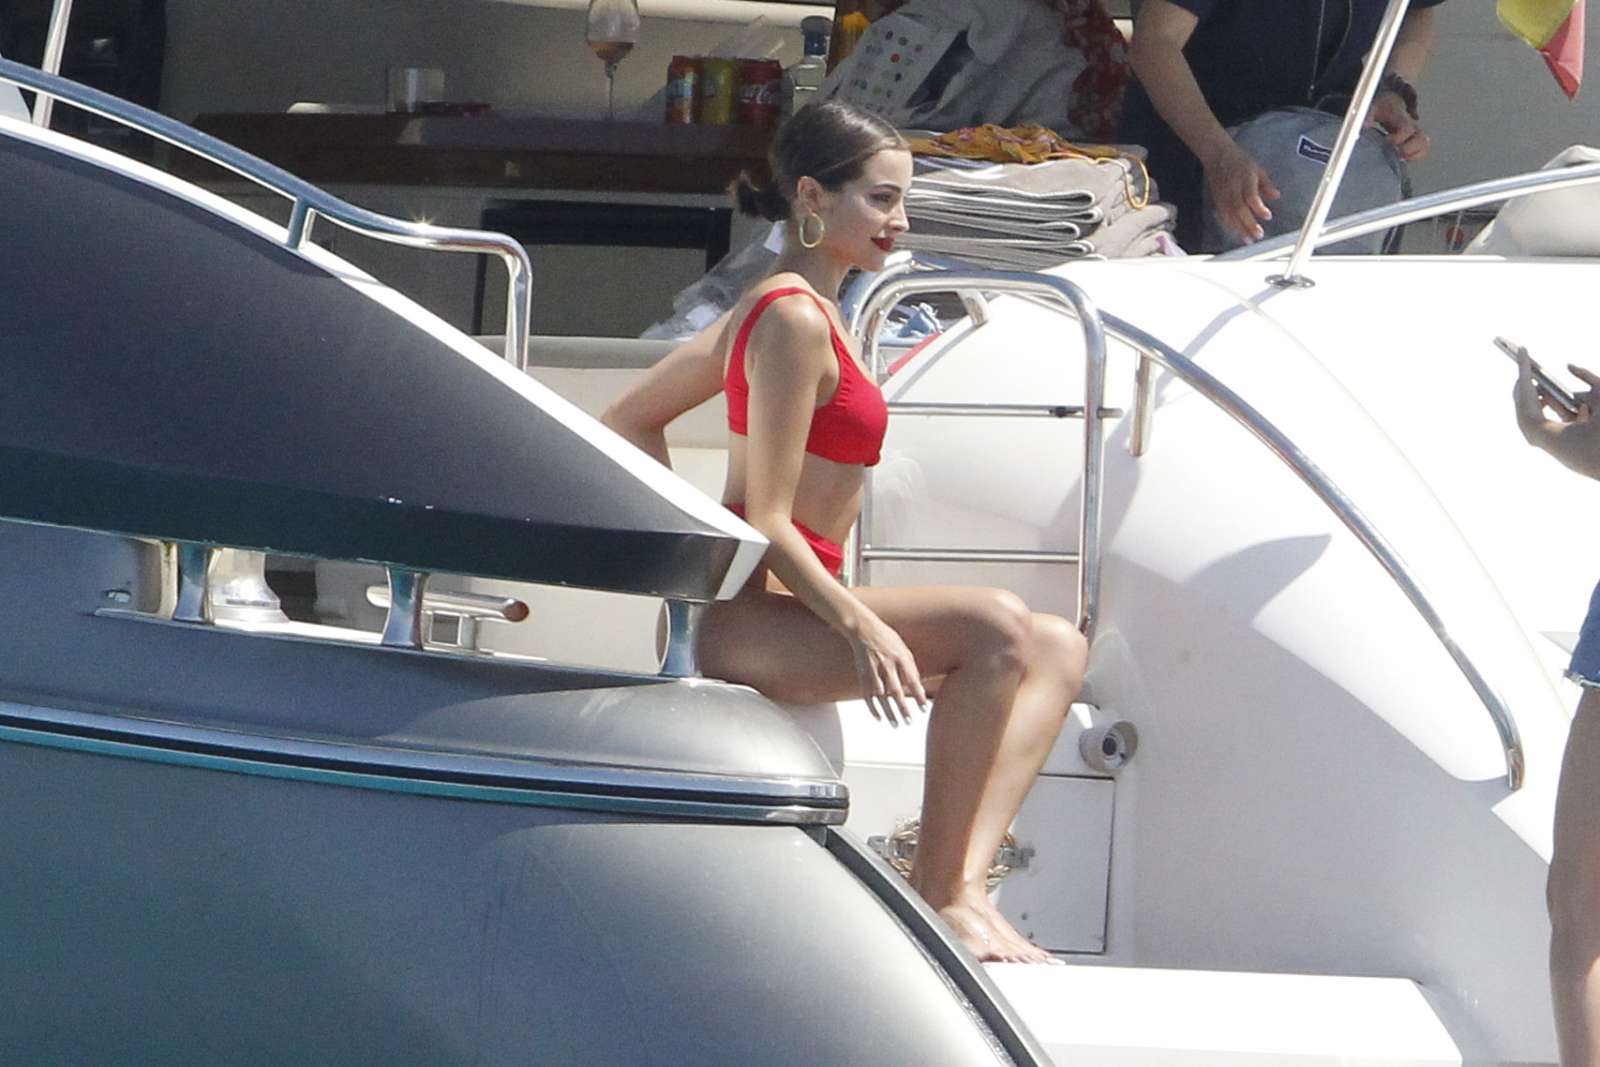 Olivia Culpo in Red Bikini on a yacht in Formentera